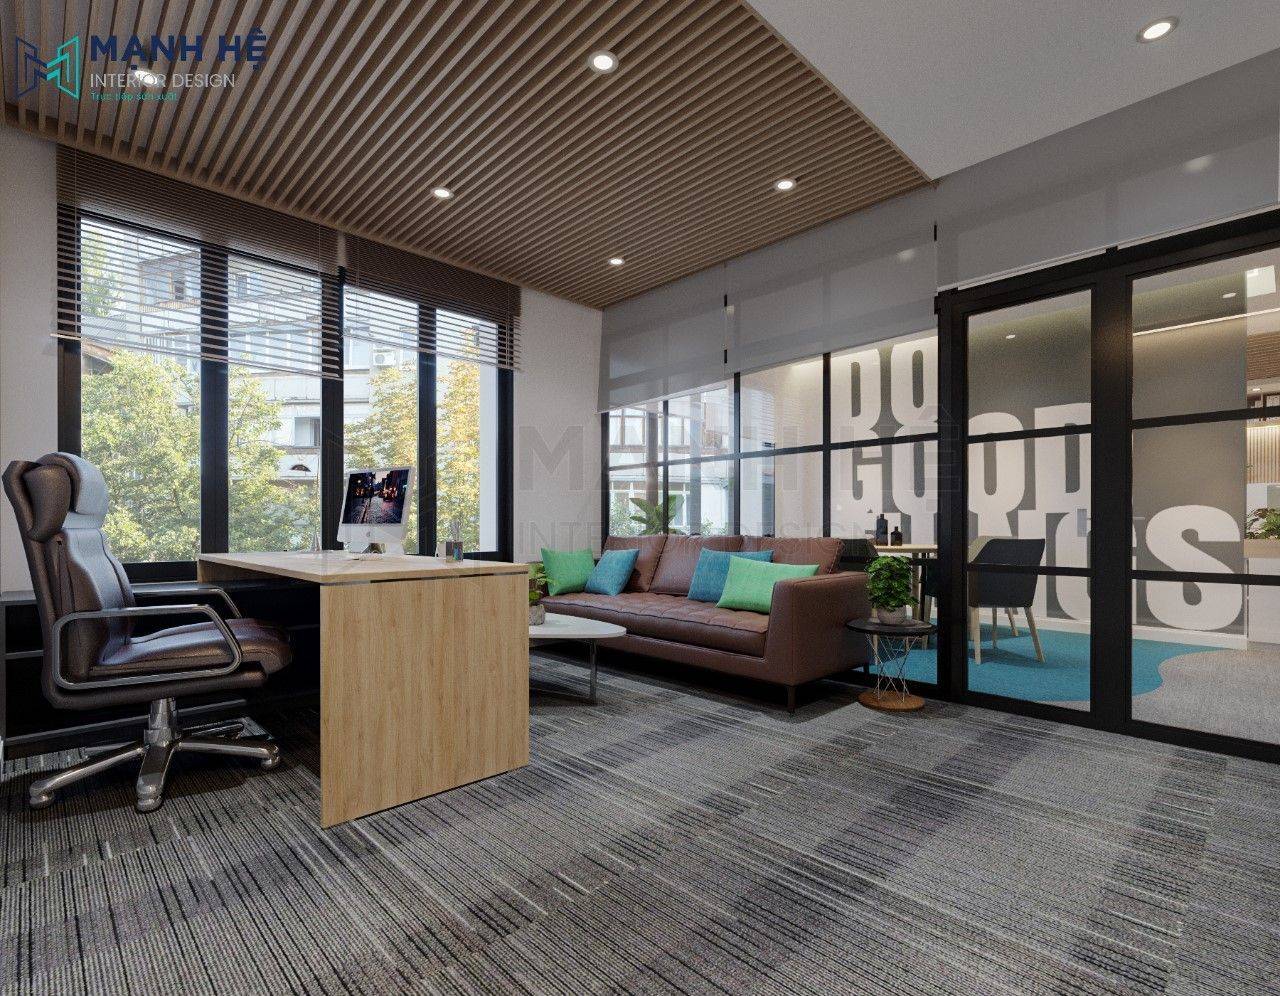 Thiết kế nội thất văn phòng hiện đại và sang trọng – tòa nhà Loyal quận 3